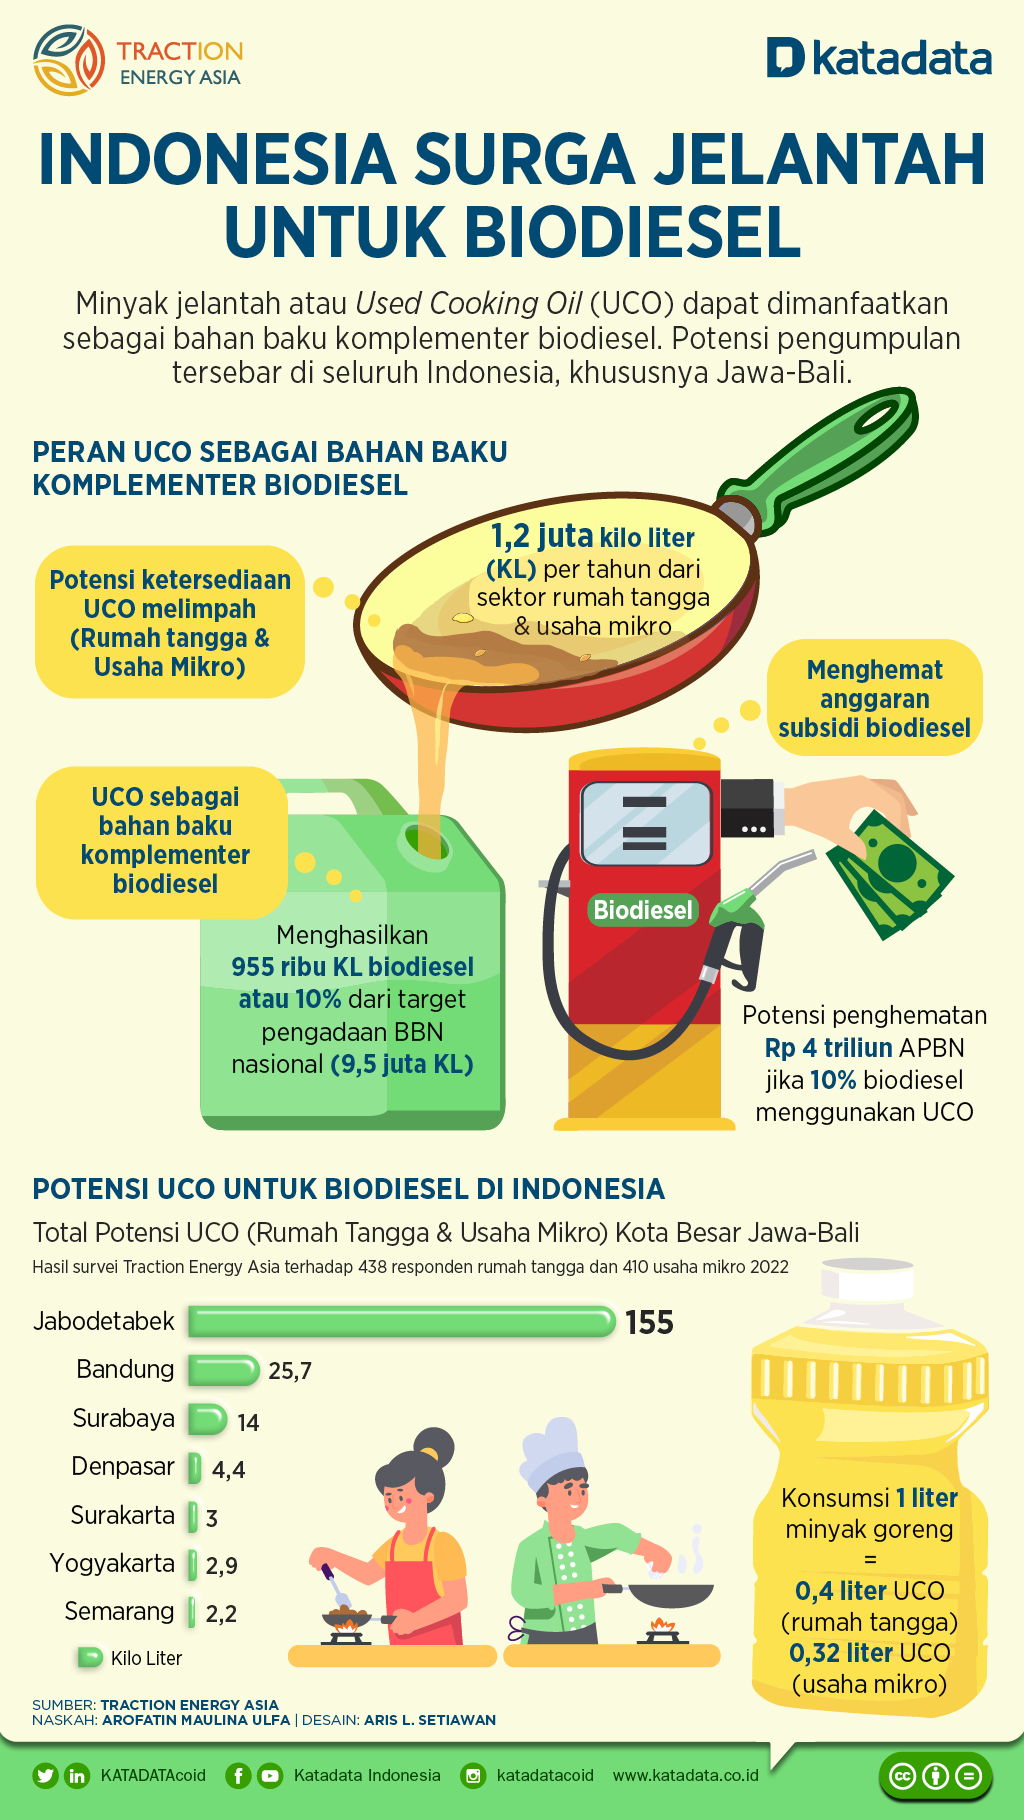 Indonesia Surga Jelantah untuk Biodiesel